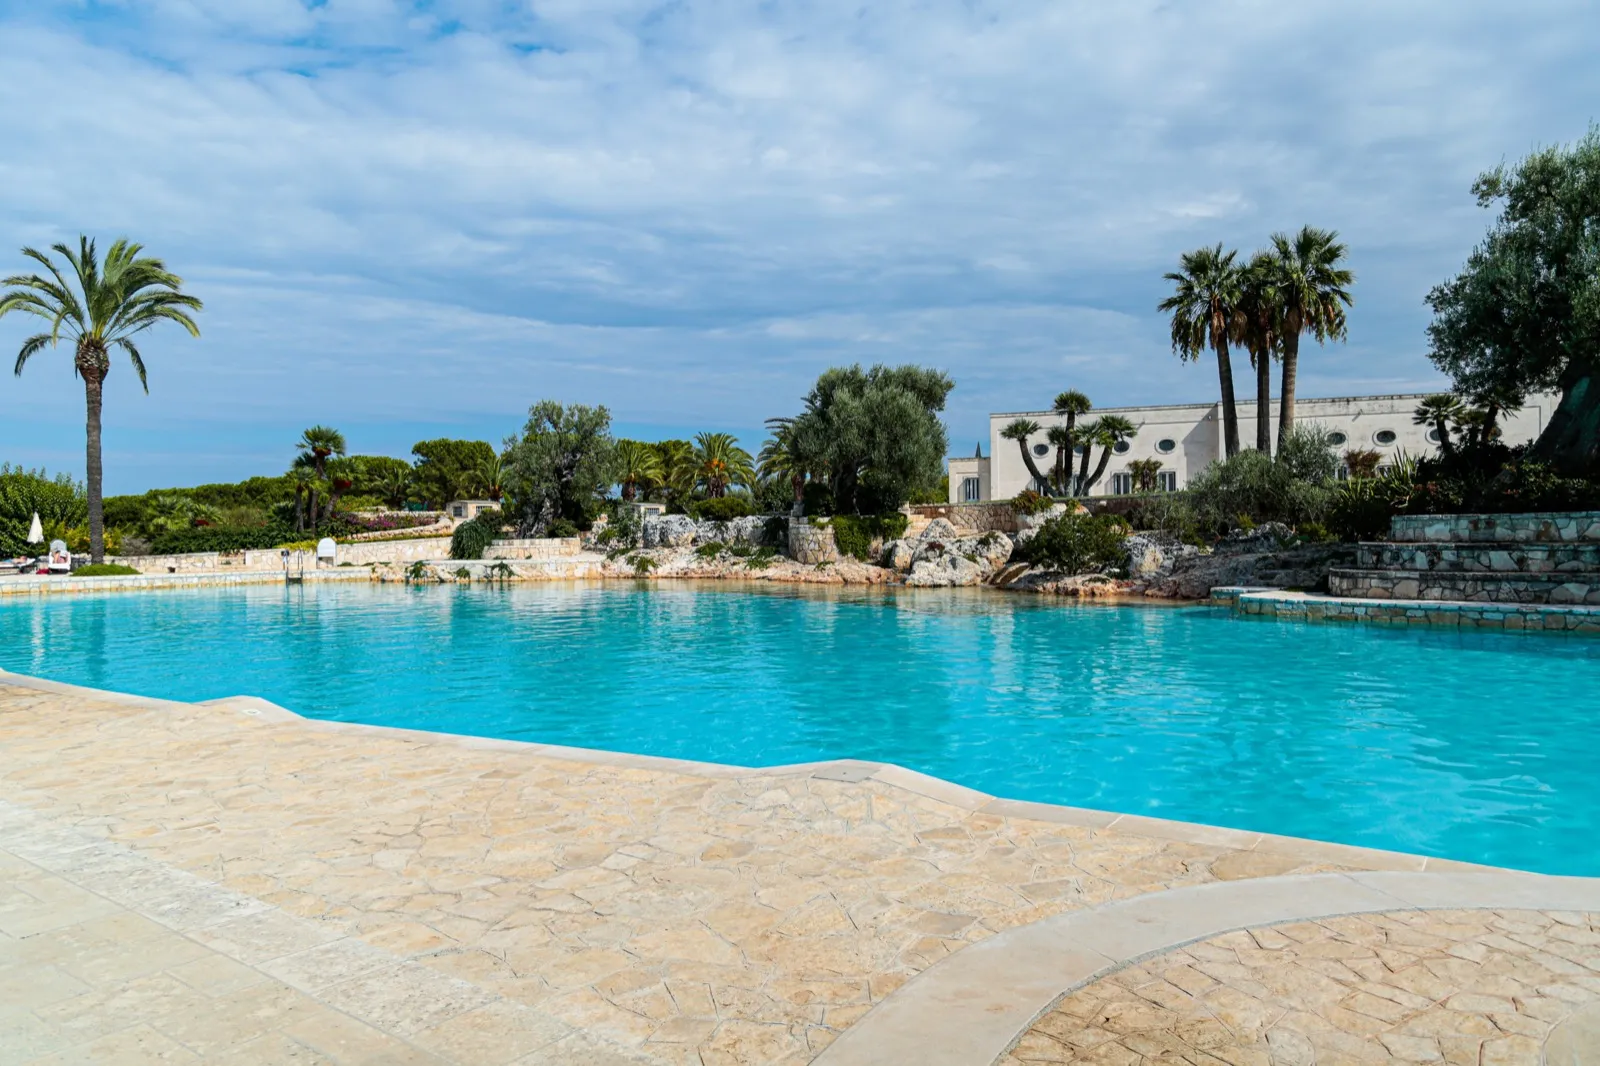 Beautiful farmhouse in Puglia with swimming pool